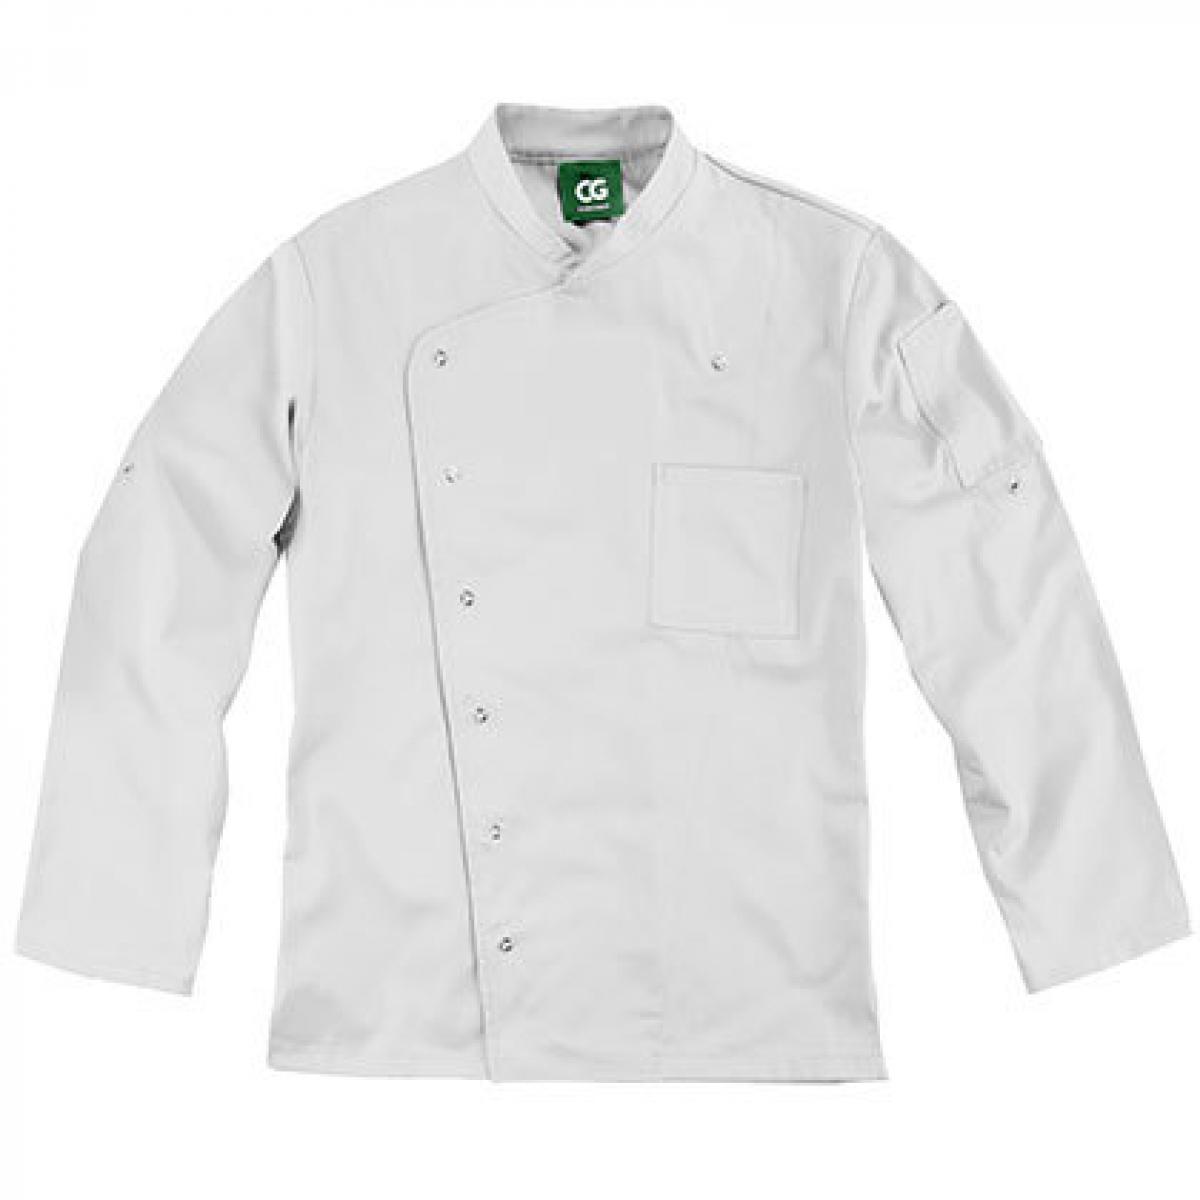 Hersteller: CG Workwear Herstellernummer: 03100-44 Artikelbezeichnung: Men´s Chef Jacket Turin GreeNature waschbar bis 95 °C Farbe: Cool Grey